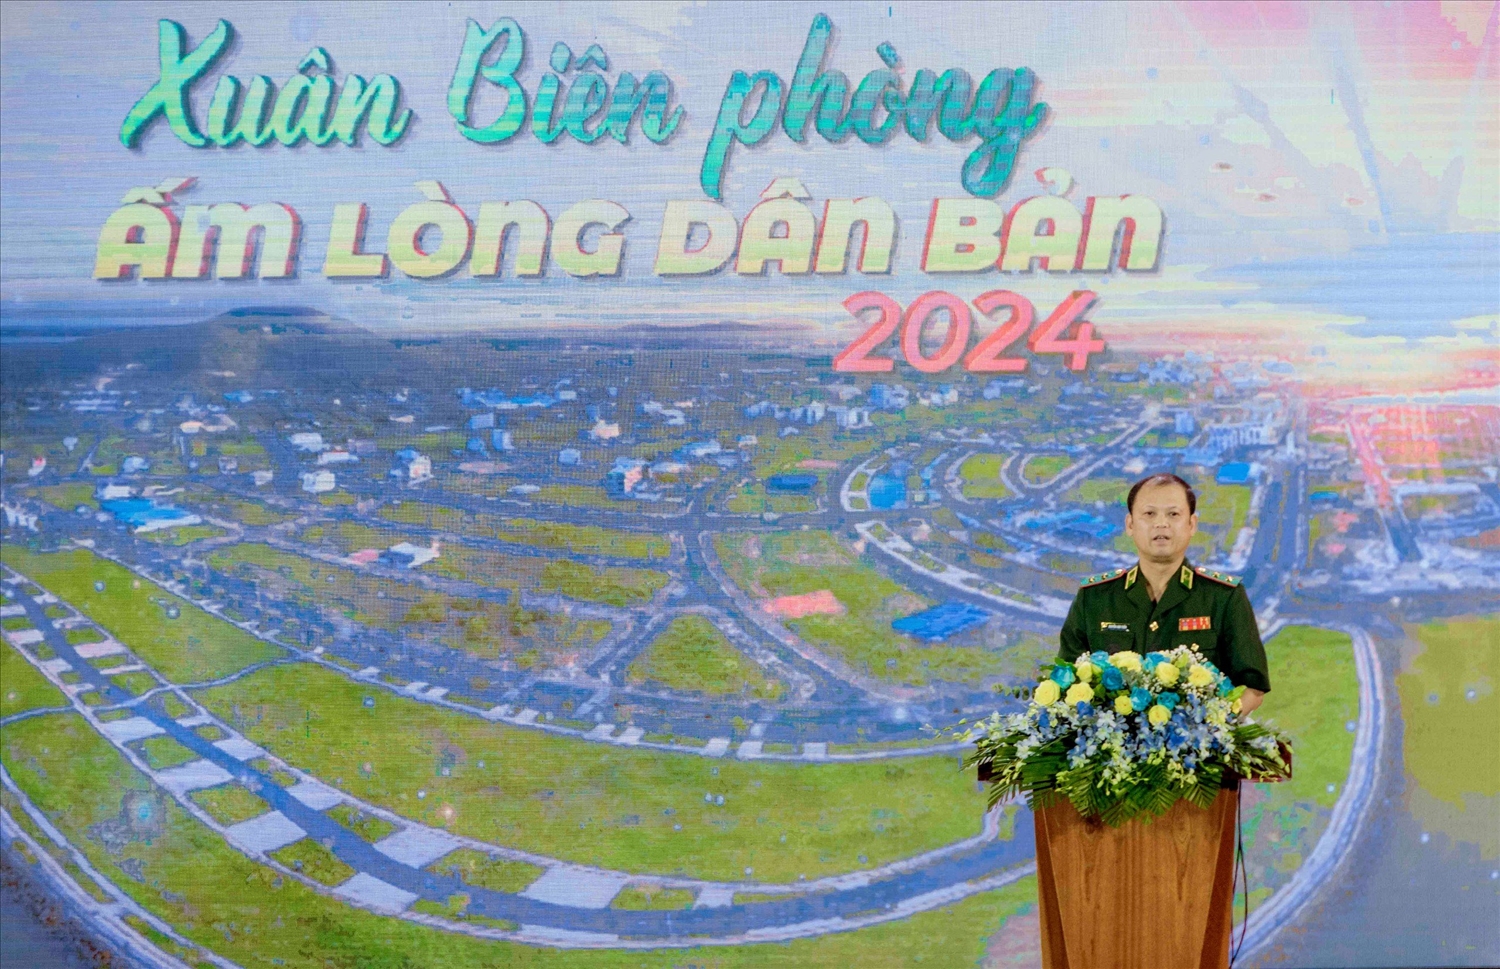 Trung tướng Nguyễn Anh Tuấn, Chính ủy Bộ Tư lệnh BĐBP phát biểu khai mạc Chương trình “Xuân Biên phòng ấm lòng Dân bản” năm 2024 tại TP. Hà Tiên ( Kiên Giang) 